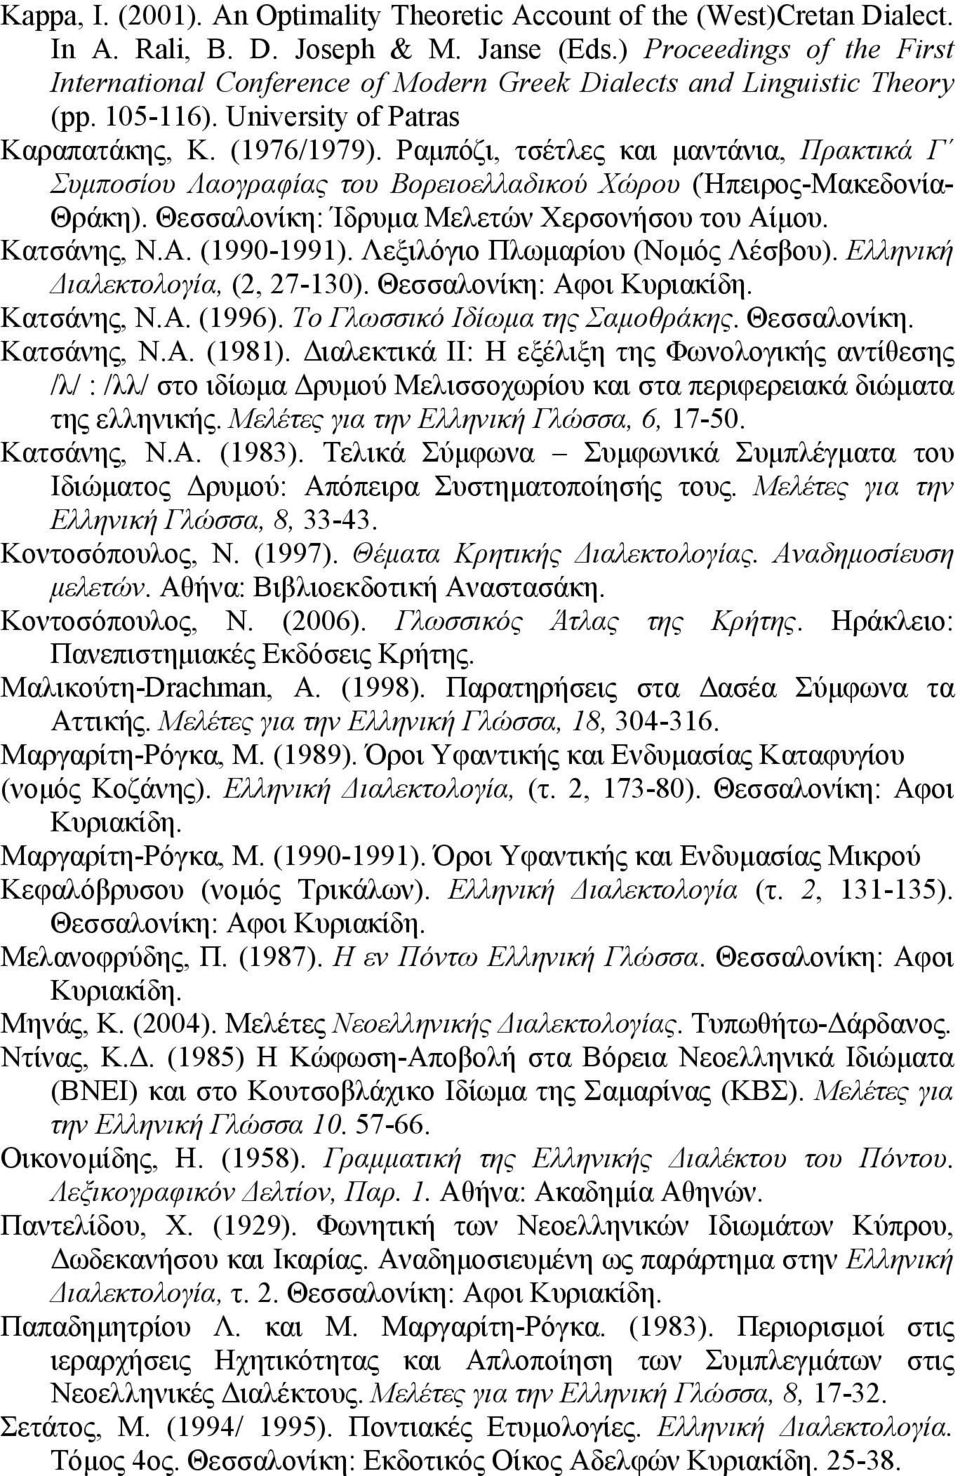 Ραμπόζι, τσέτλες και μαντάνια, Πρακτικά Γ Συμποσίου Λαογραφίας του Βορειοελλαδικού Χώρου (Ήπειρος-Μακεδονία- Θράκη). Θεσσαλονίκη: Ίδρυμα Μελετών Χερσονήσου του Αίμου. Κατσάνης, Ν.Α. (1990-1991).